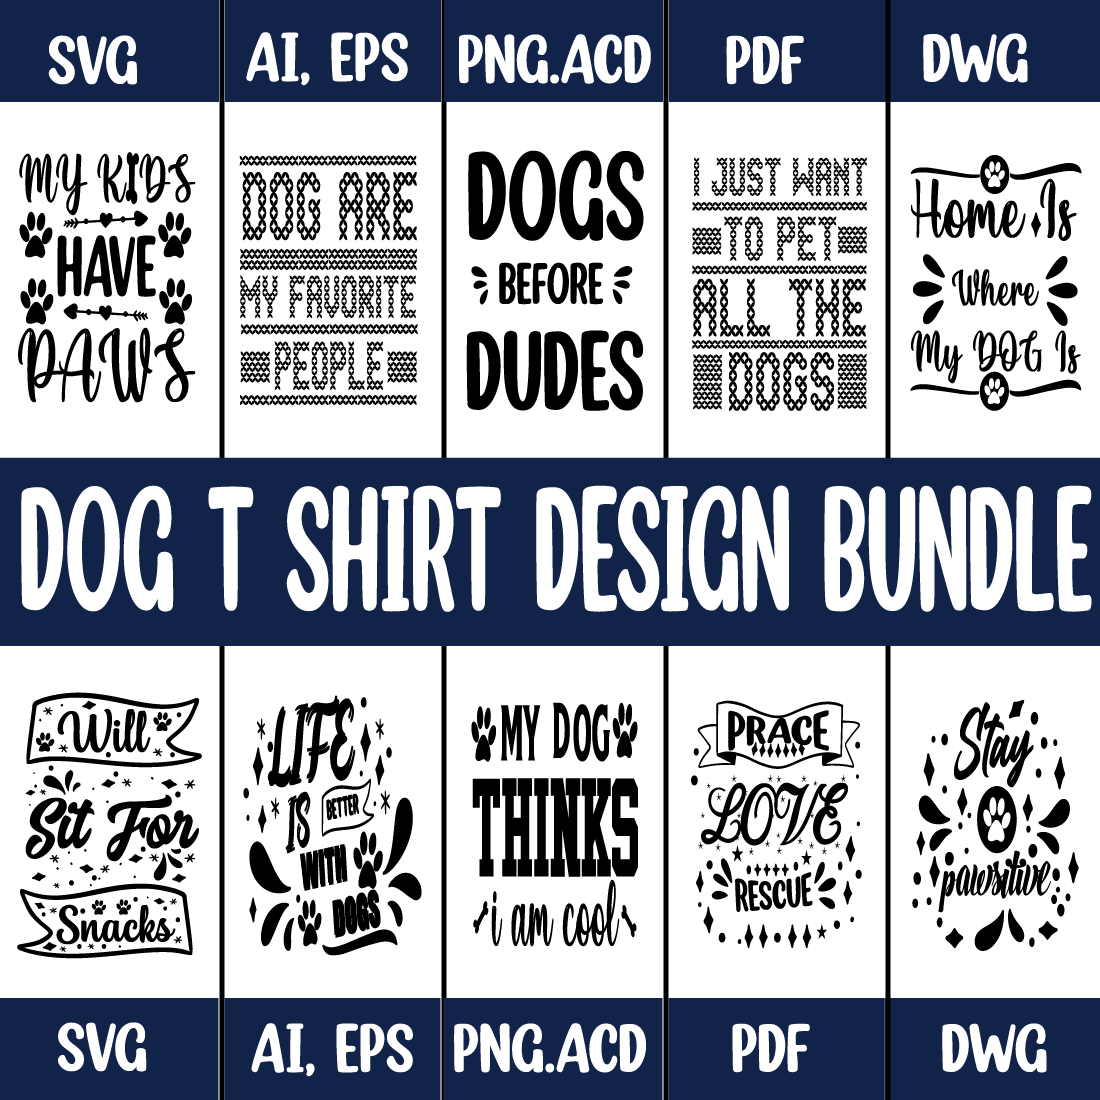 Dog T-Shirt Design SVG Bundle cover image.